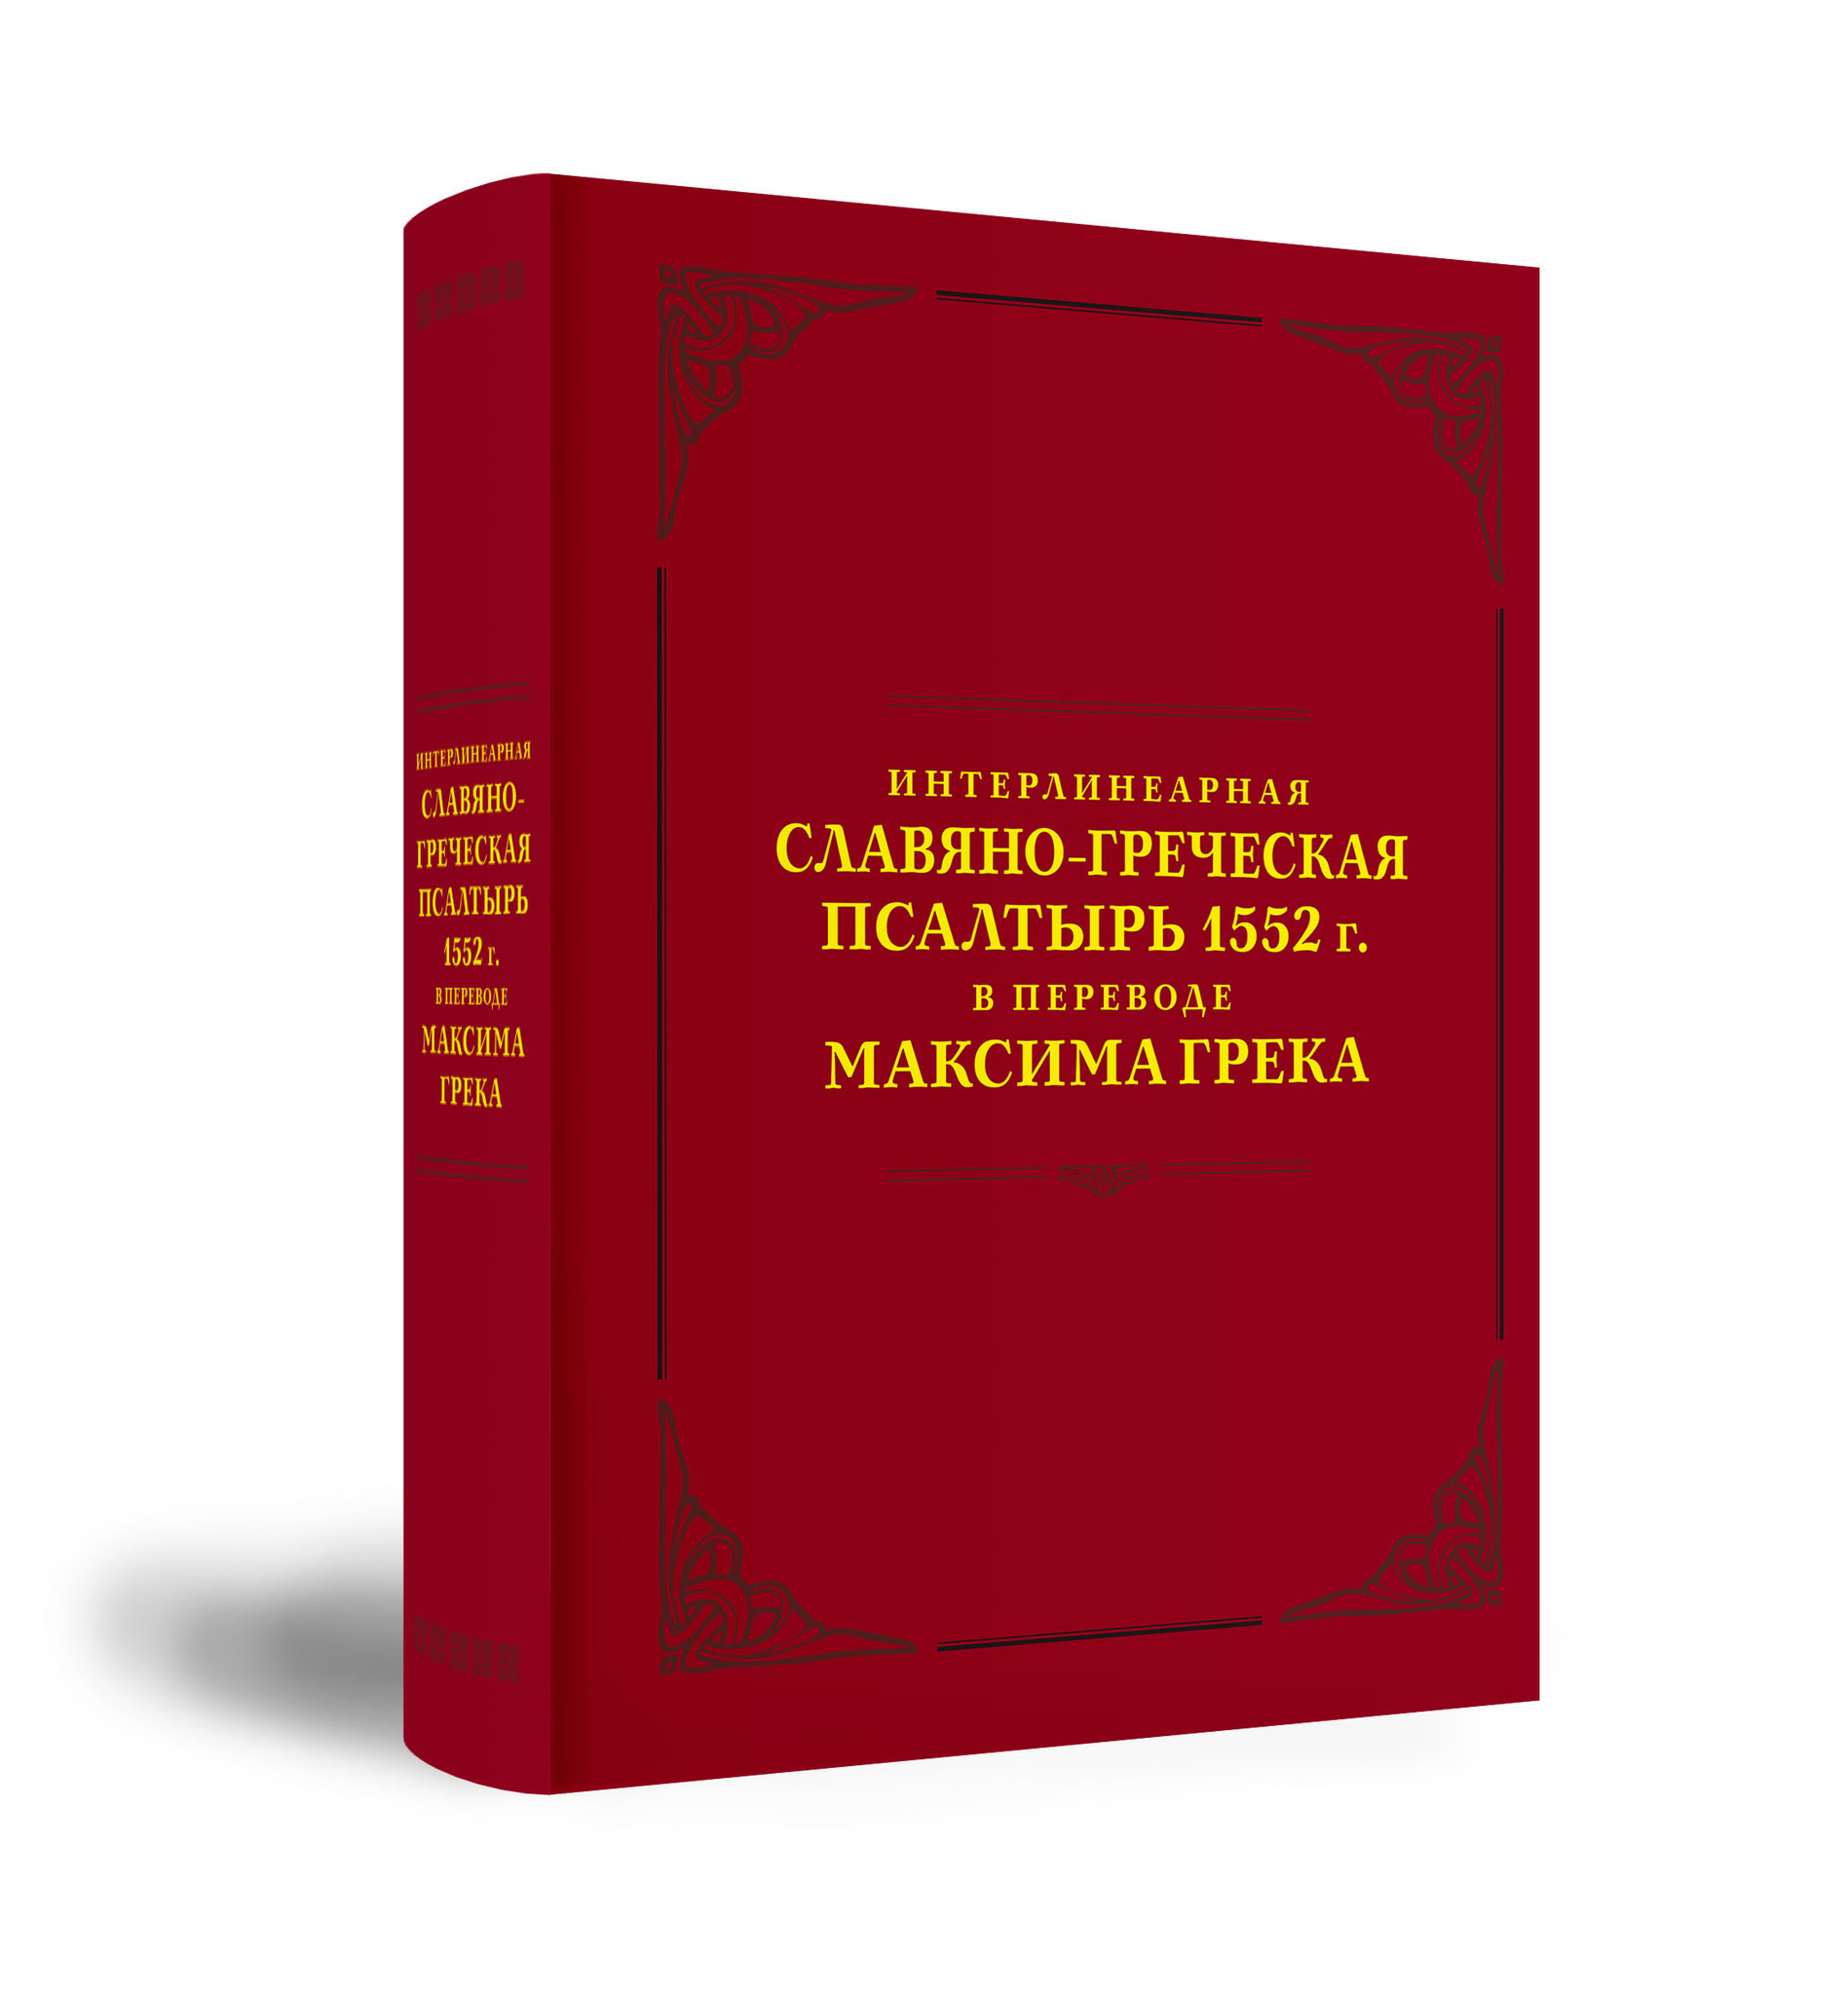 Интерлинеарная славяно-греческая Пcалтырь 1552 г.: в переводе Максима Грека